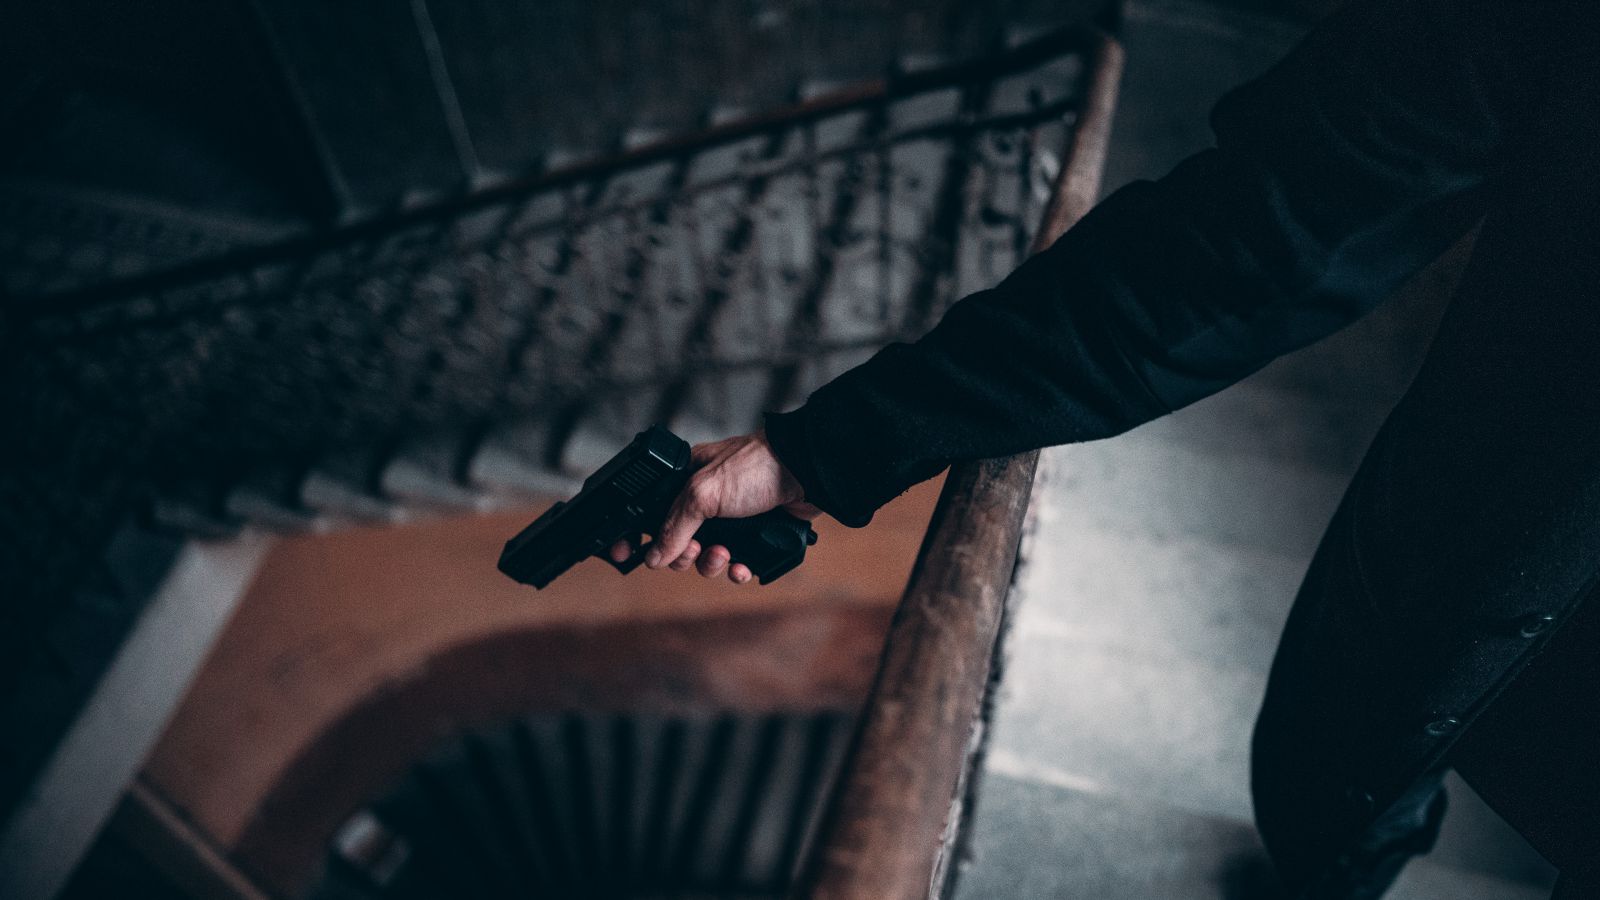 Homem em uma escadaria segurando arma 